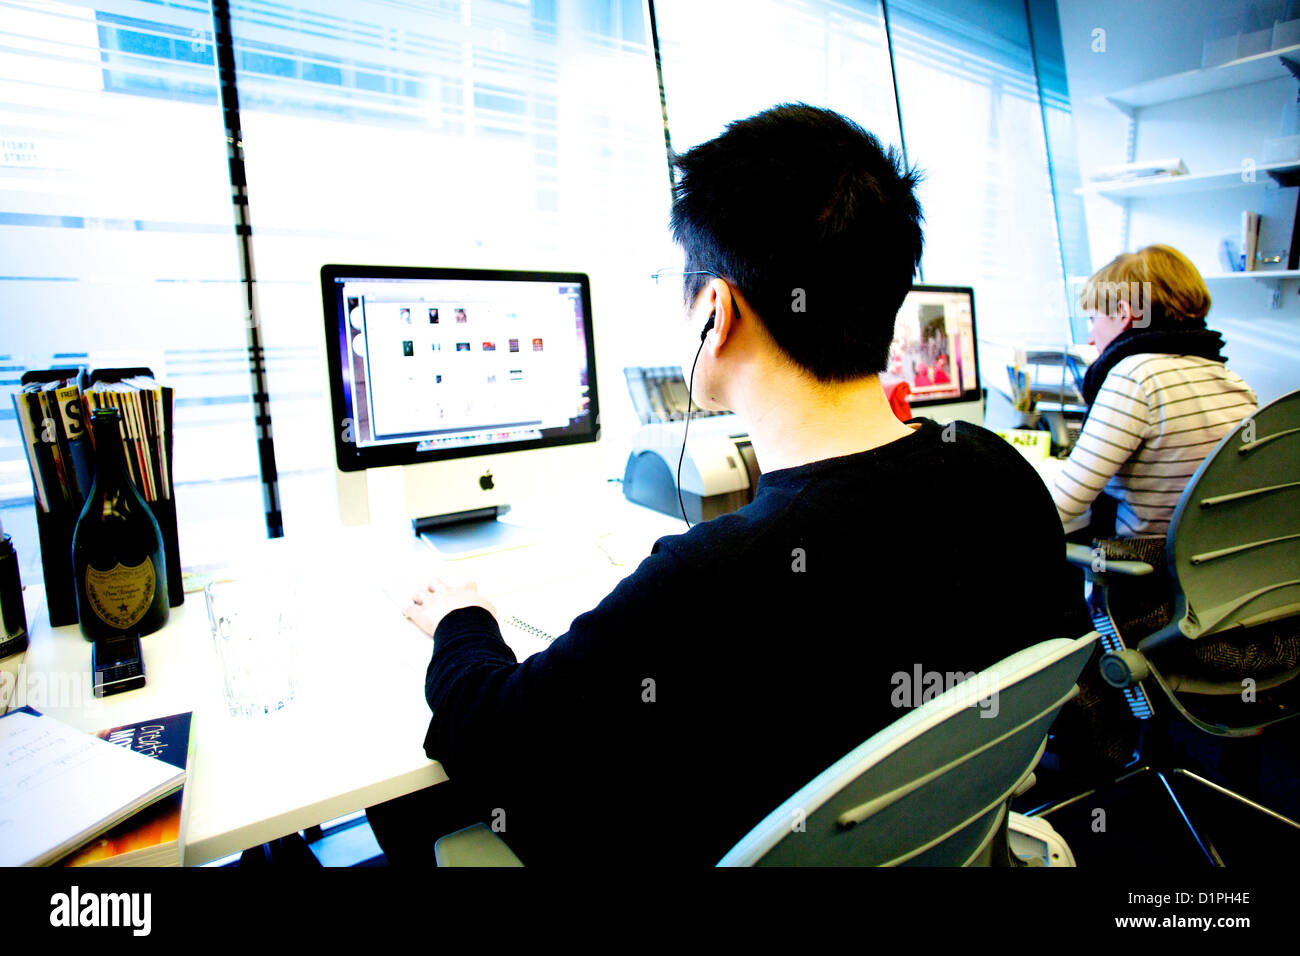 Las espaldas de 2 jóvenes diseñadores gráficos trabajan en equipos en una oficina. Foto de stock